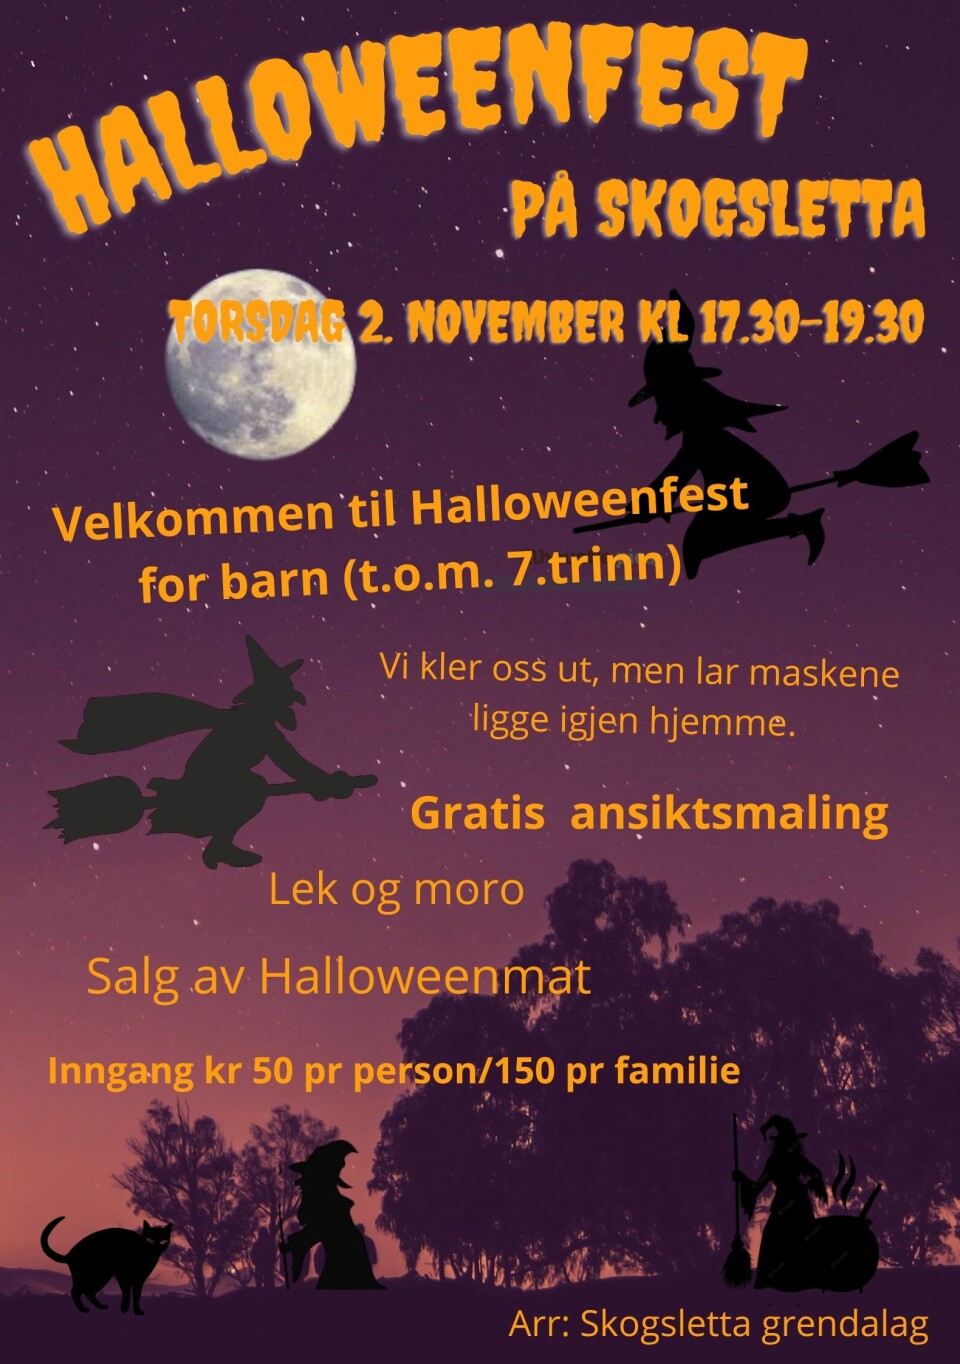 Plakat om Halloweenfets for barn på Skogsletta torsdag 2. november 2023 kl 17.30.